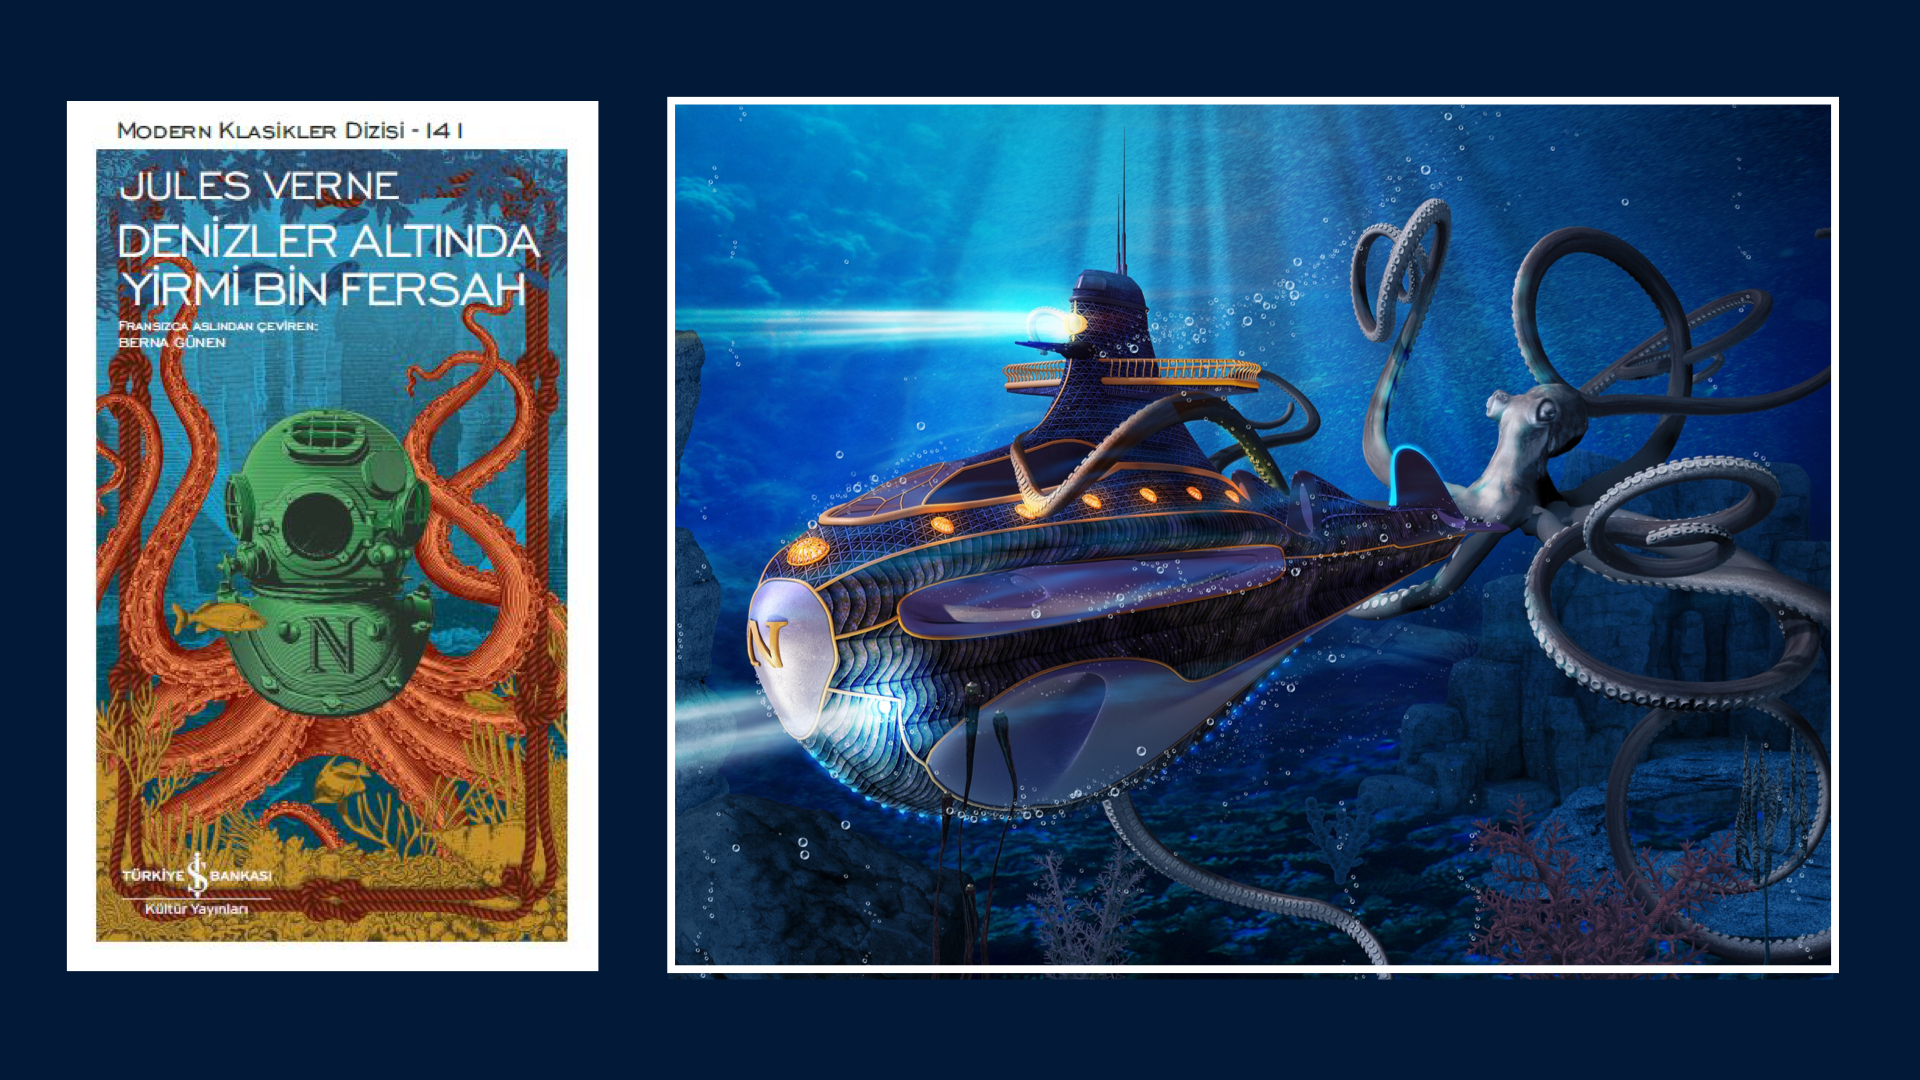 Kitap: Denizler Altında 20 Bin Fersah | Yazar: Jules Verne | Yorumlayan: Hülya Erarslan